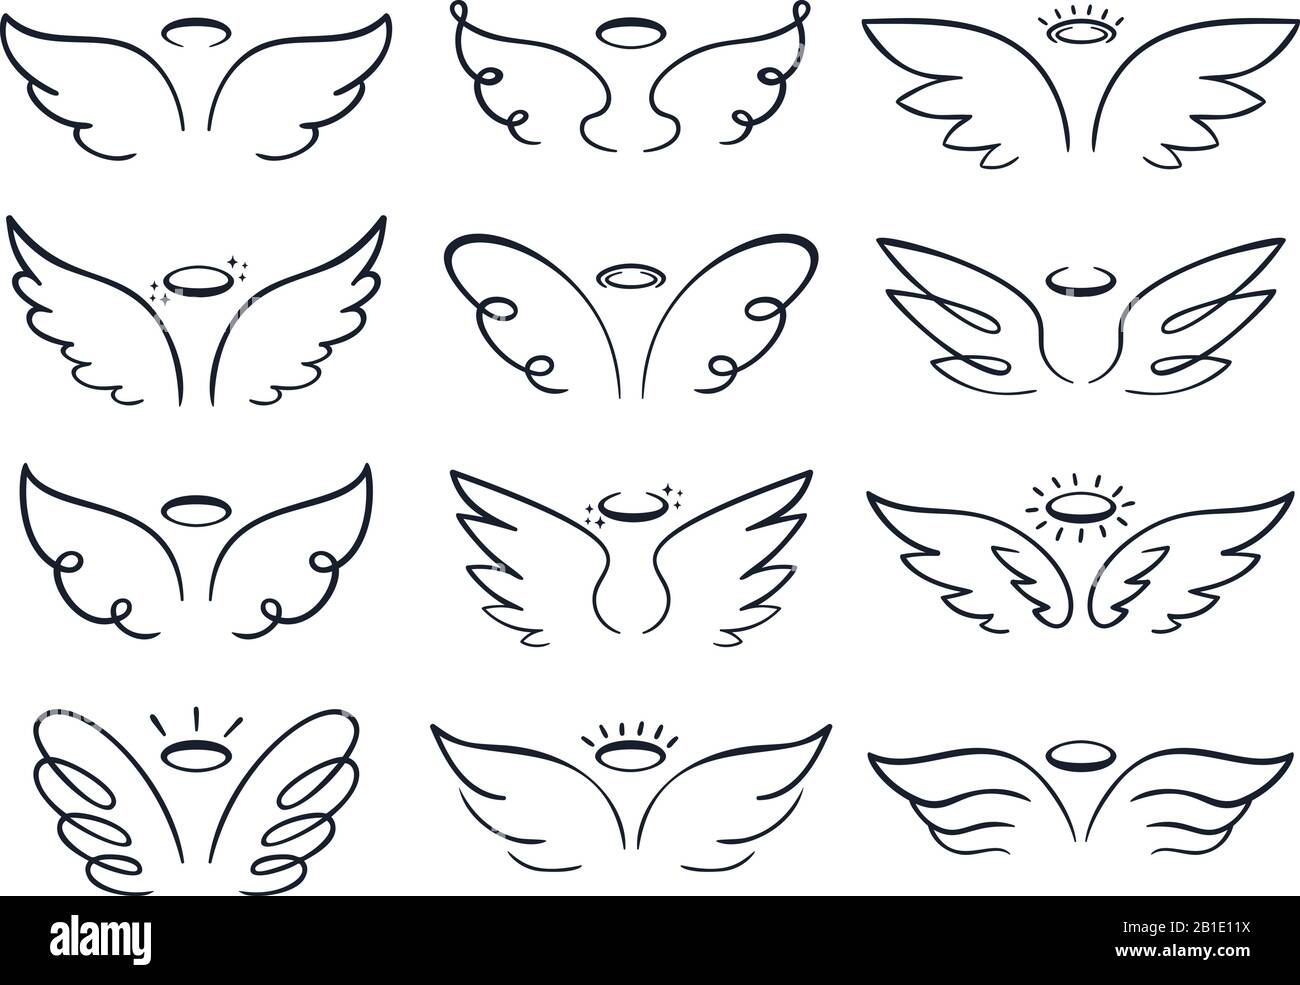 Cartoon-Skizzenflügel. Handgezeichnete Engel Flügel ausgebreitet, geflügelte Ikonen-Doodle-Vektorgrafiken gesetzt Stock Vektor